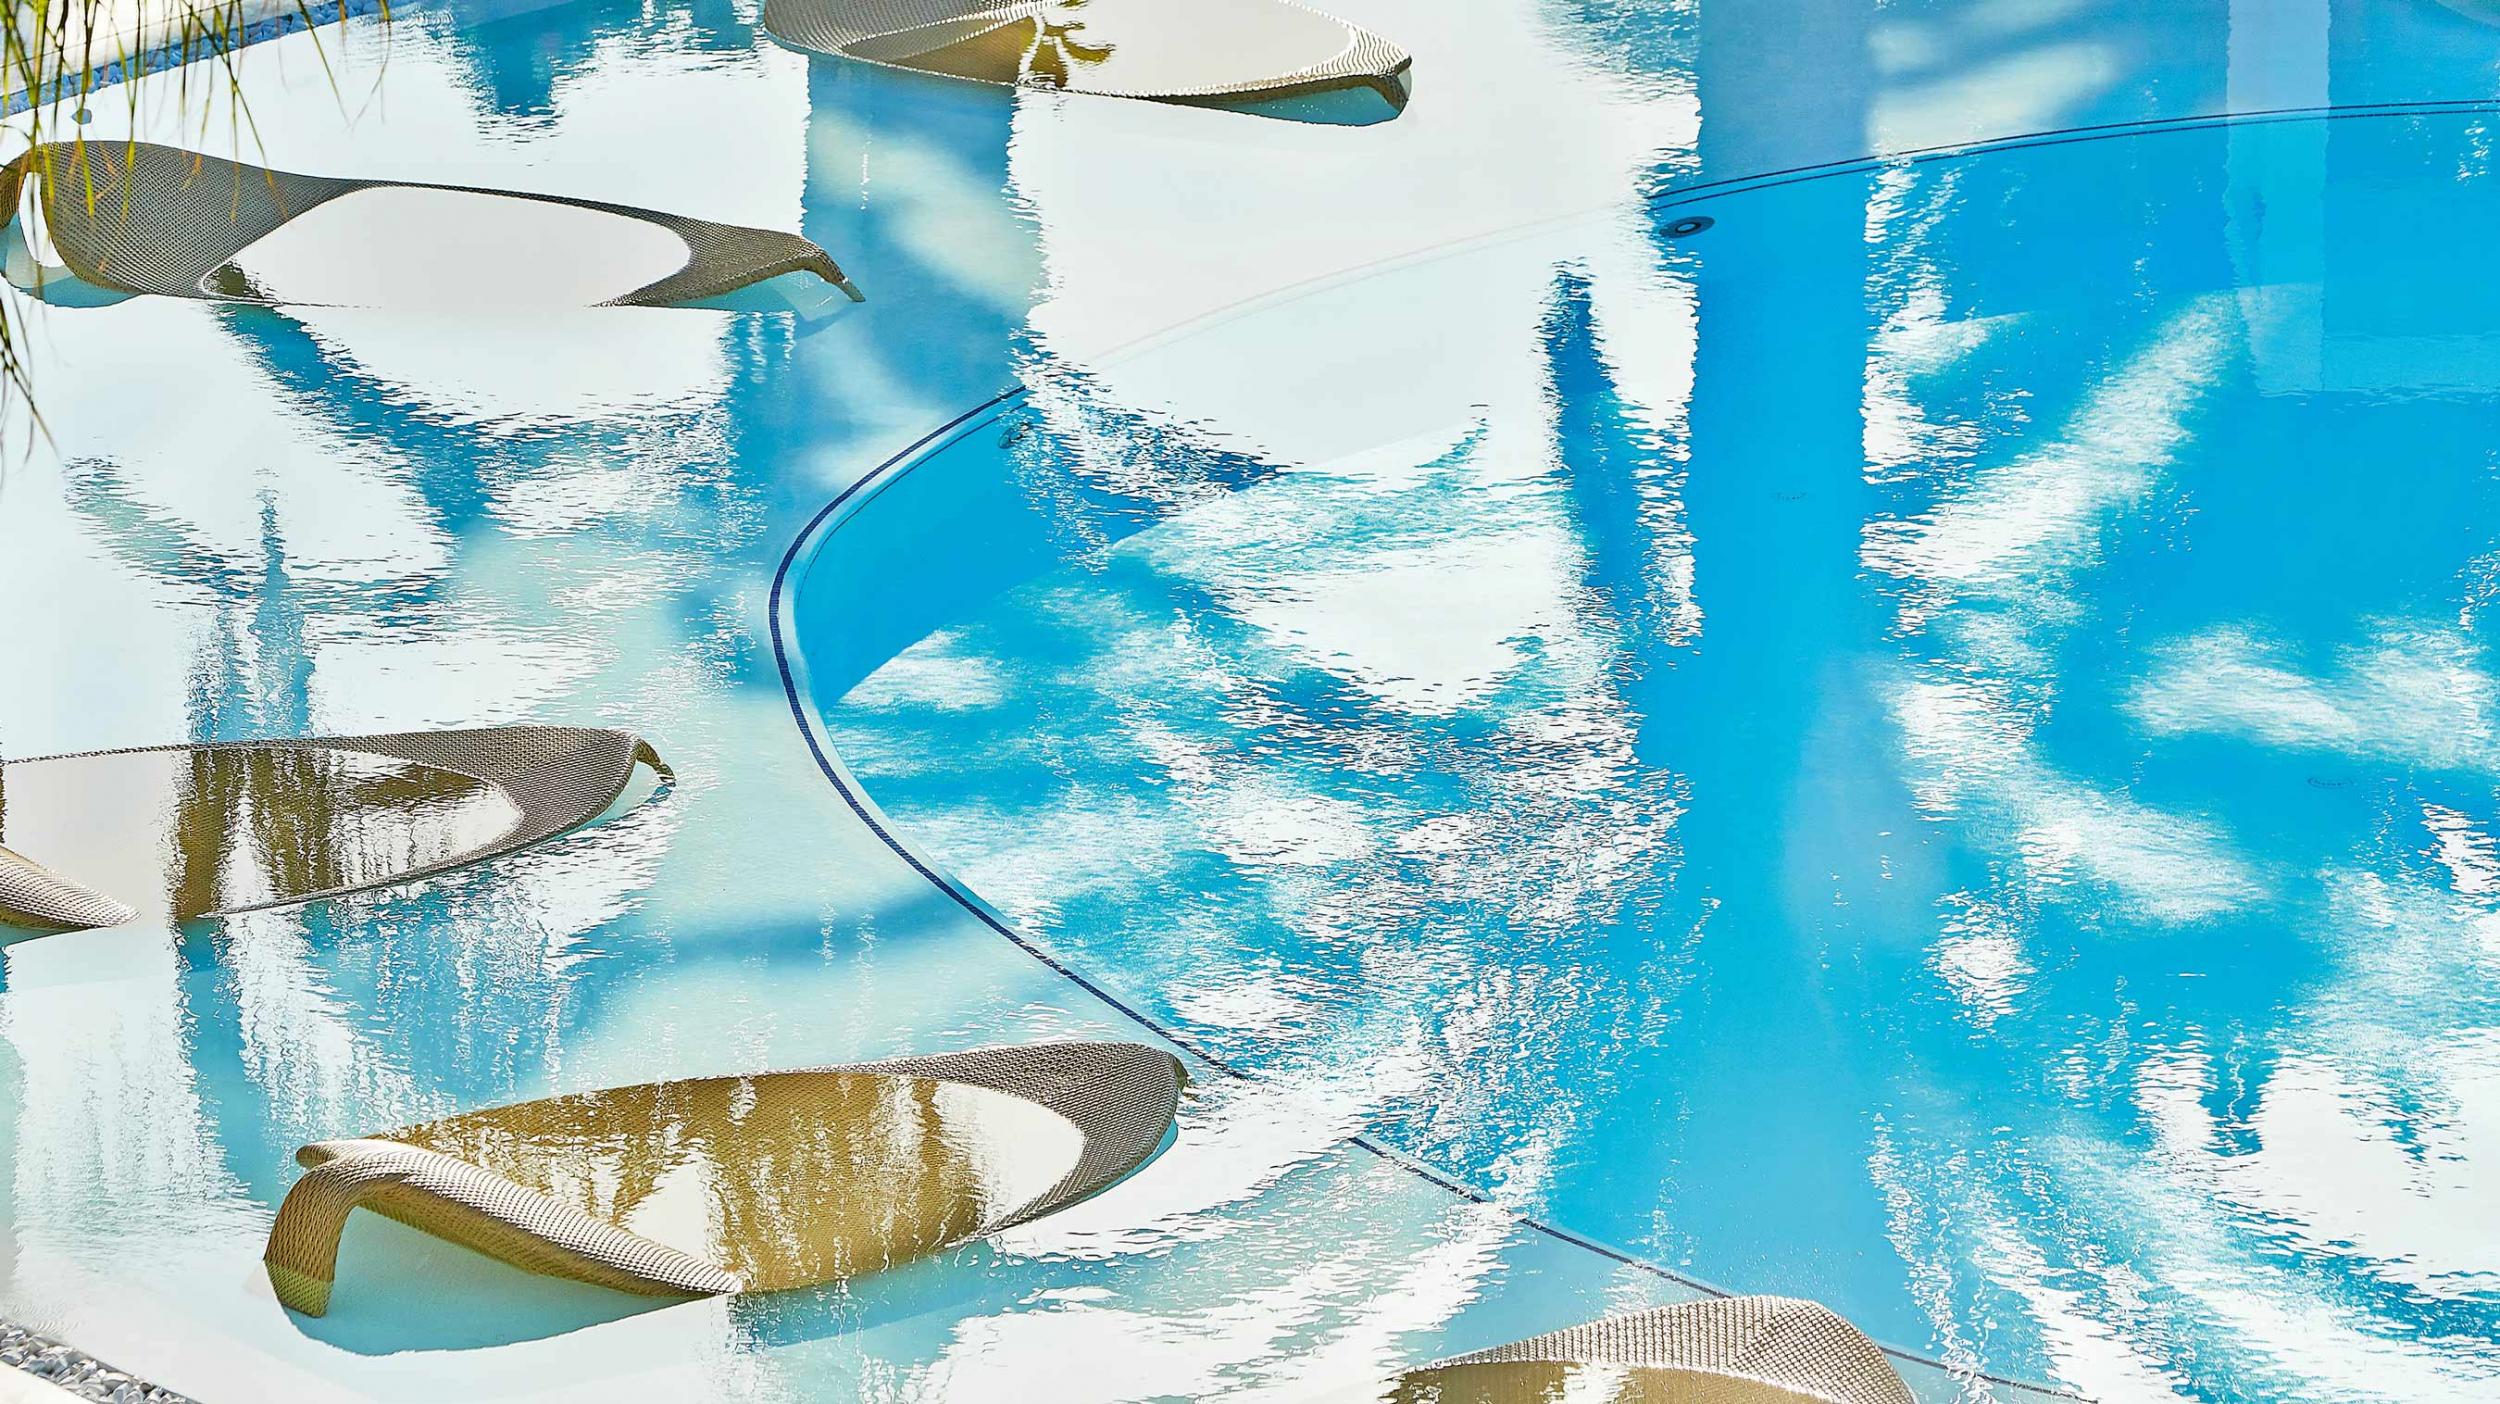 Grecotel Caramel floating sunbeds in pool